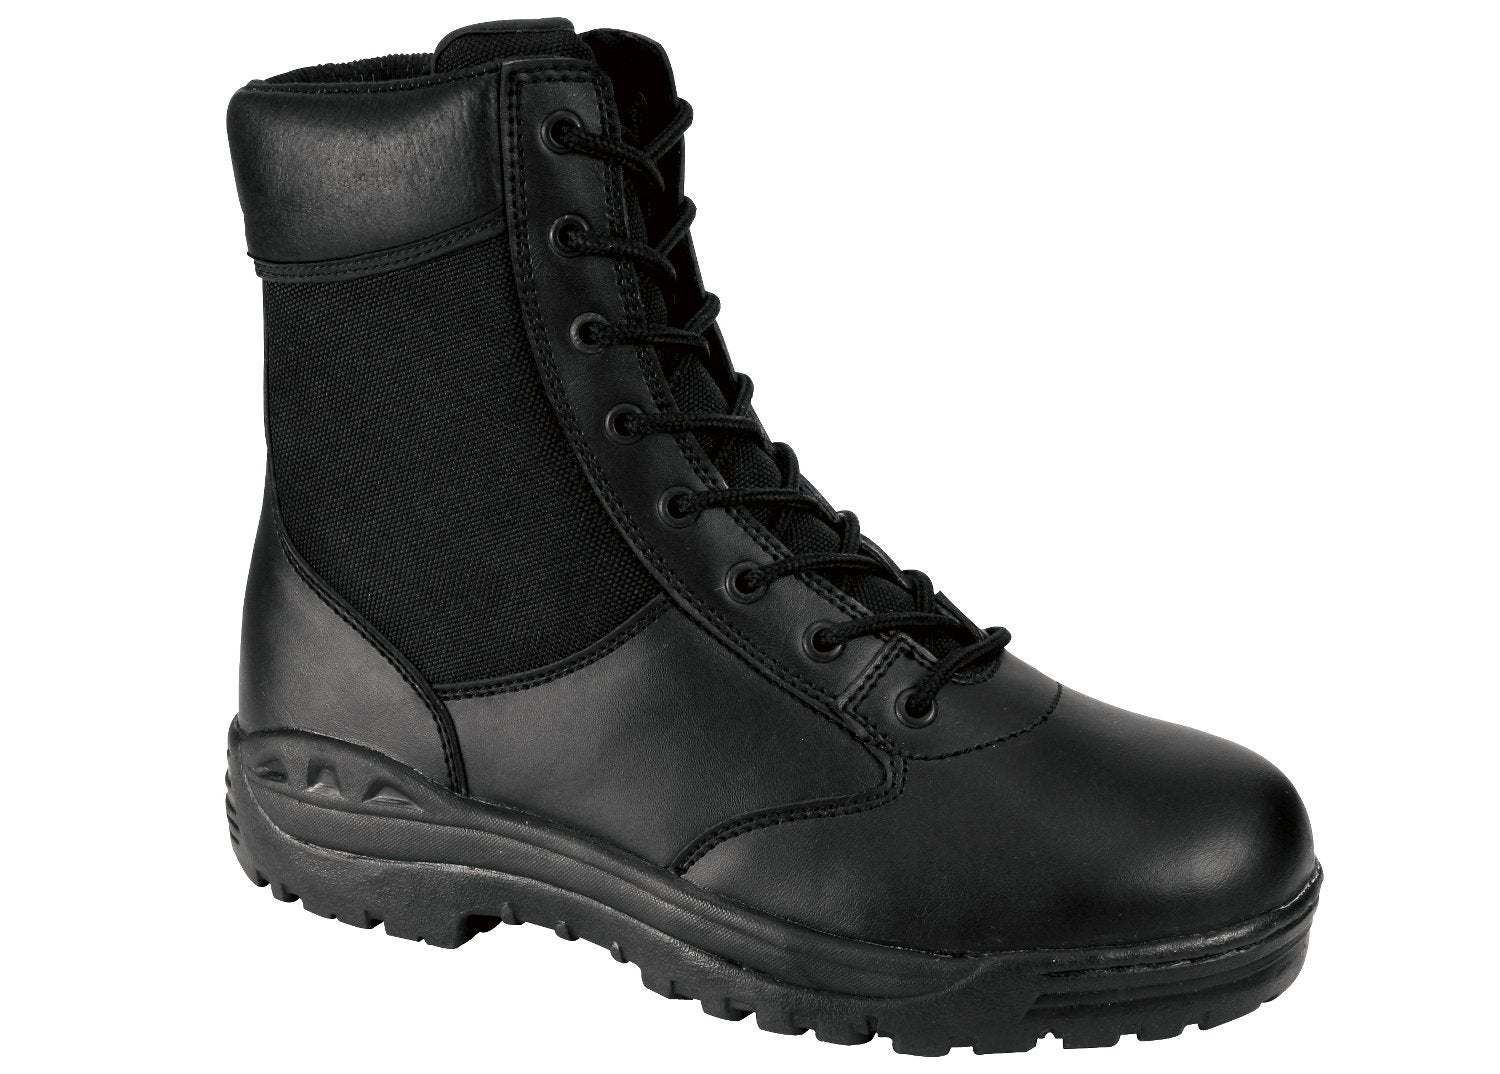 combat-boots